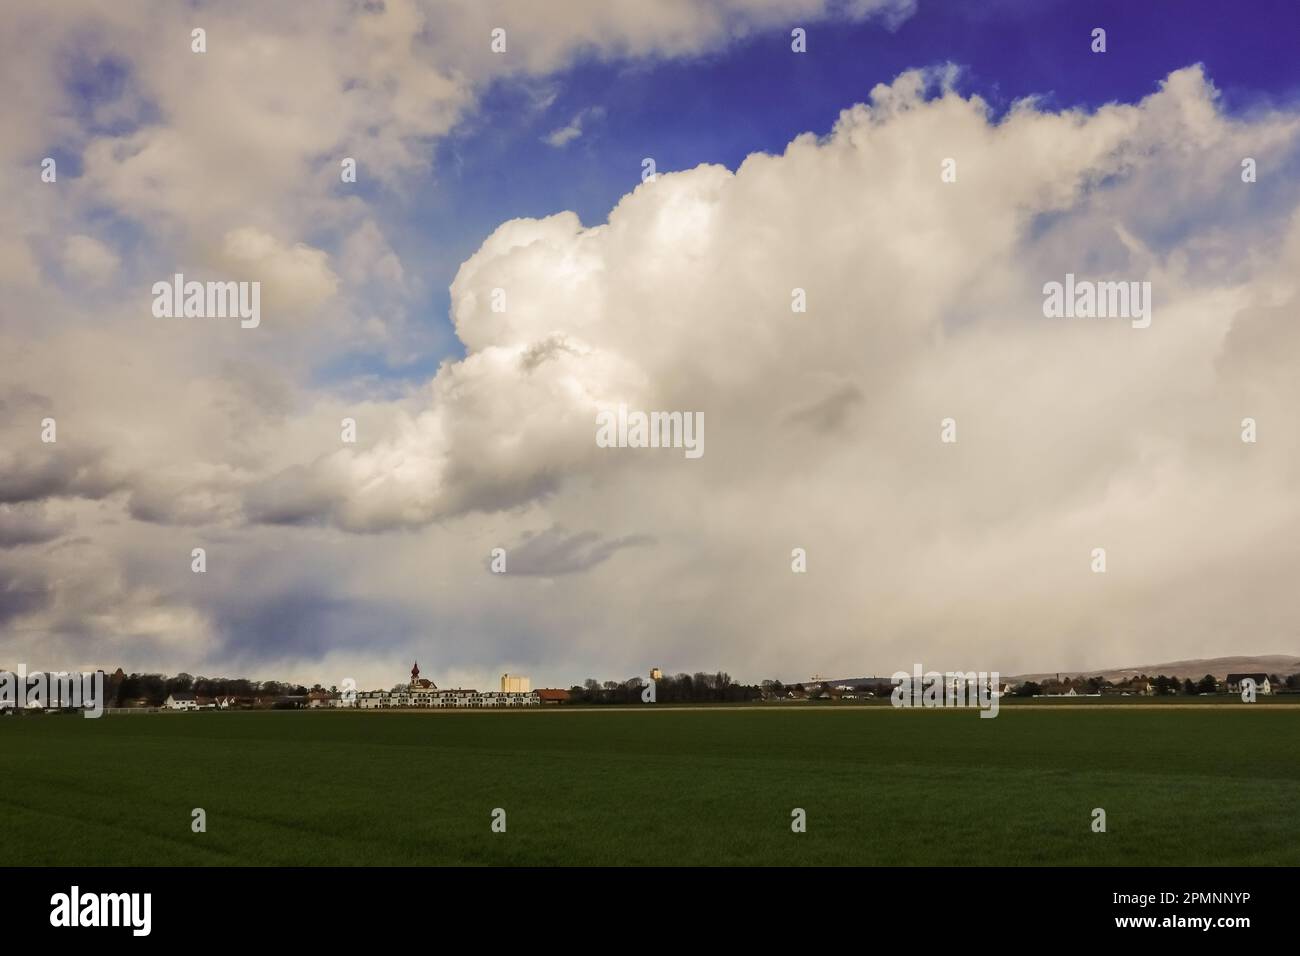 dense nuvole bianche e grigie sul cielo blu sopra un villaggio e campi in primavera Foto Stock